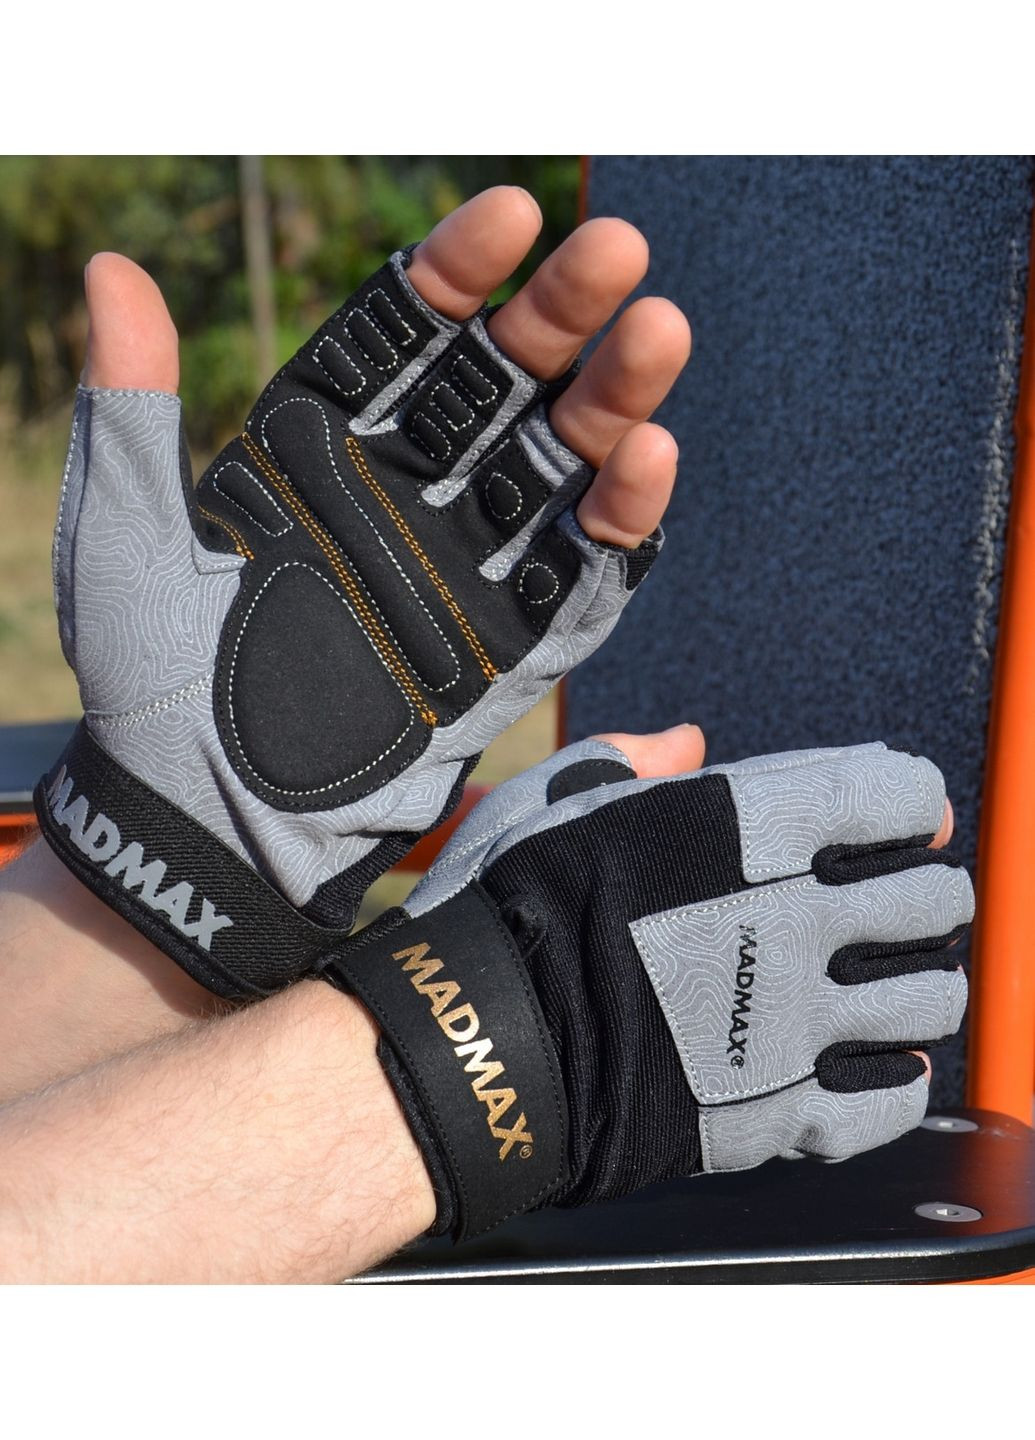 Унісекс рукавички для фітнесу XXL Mad Max (279316617)